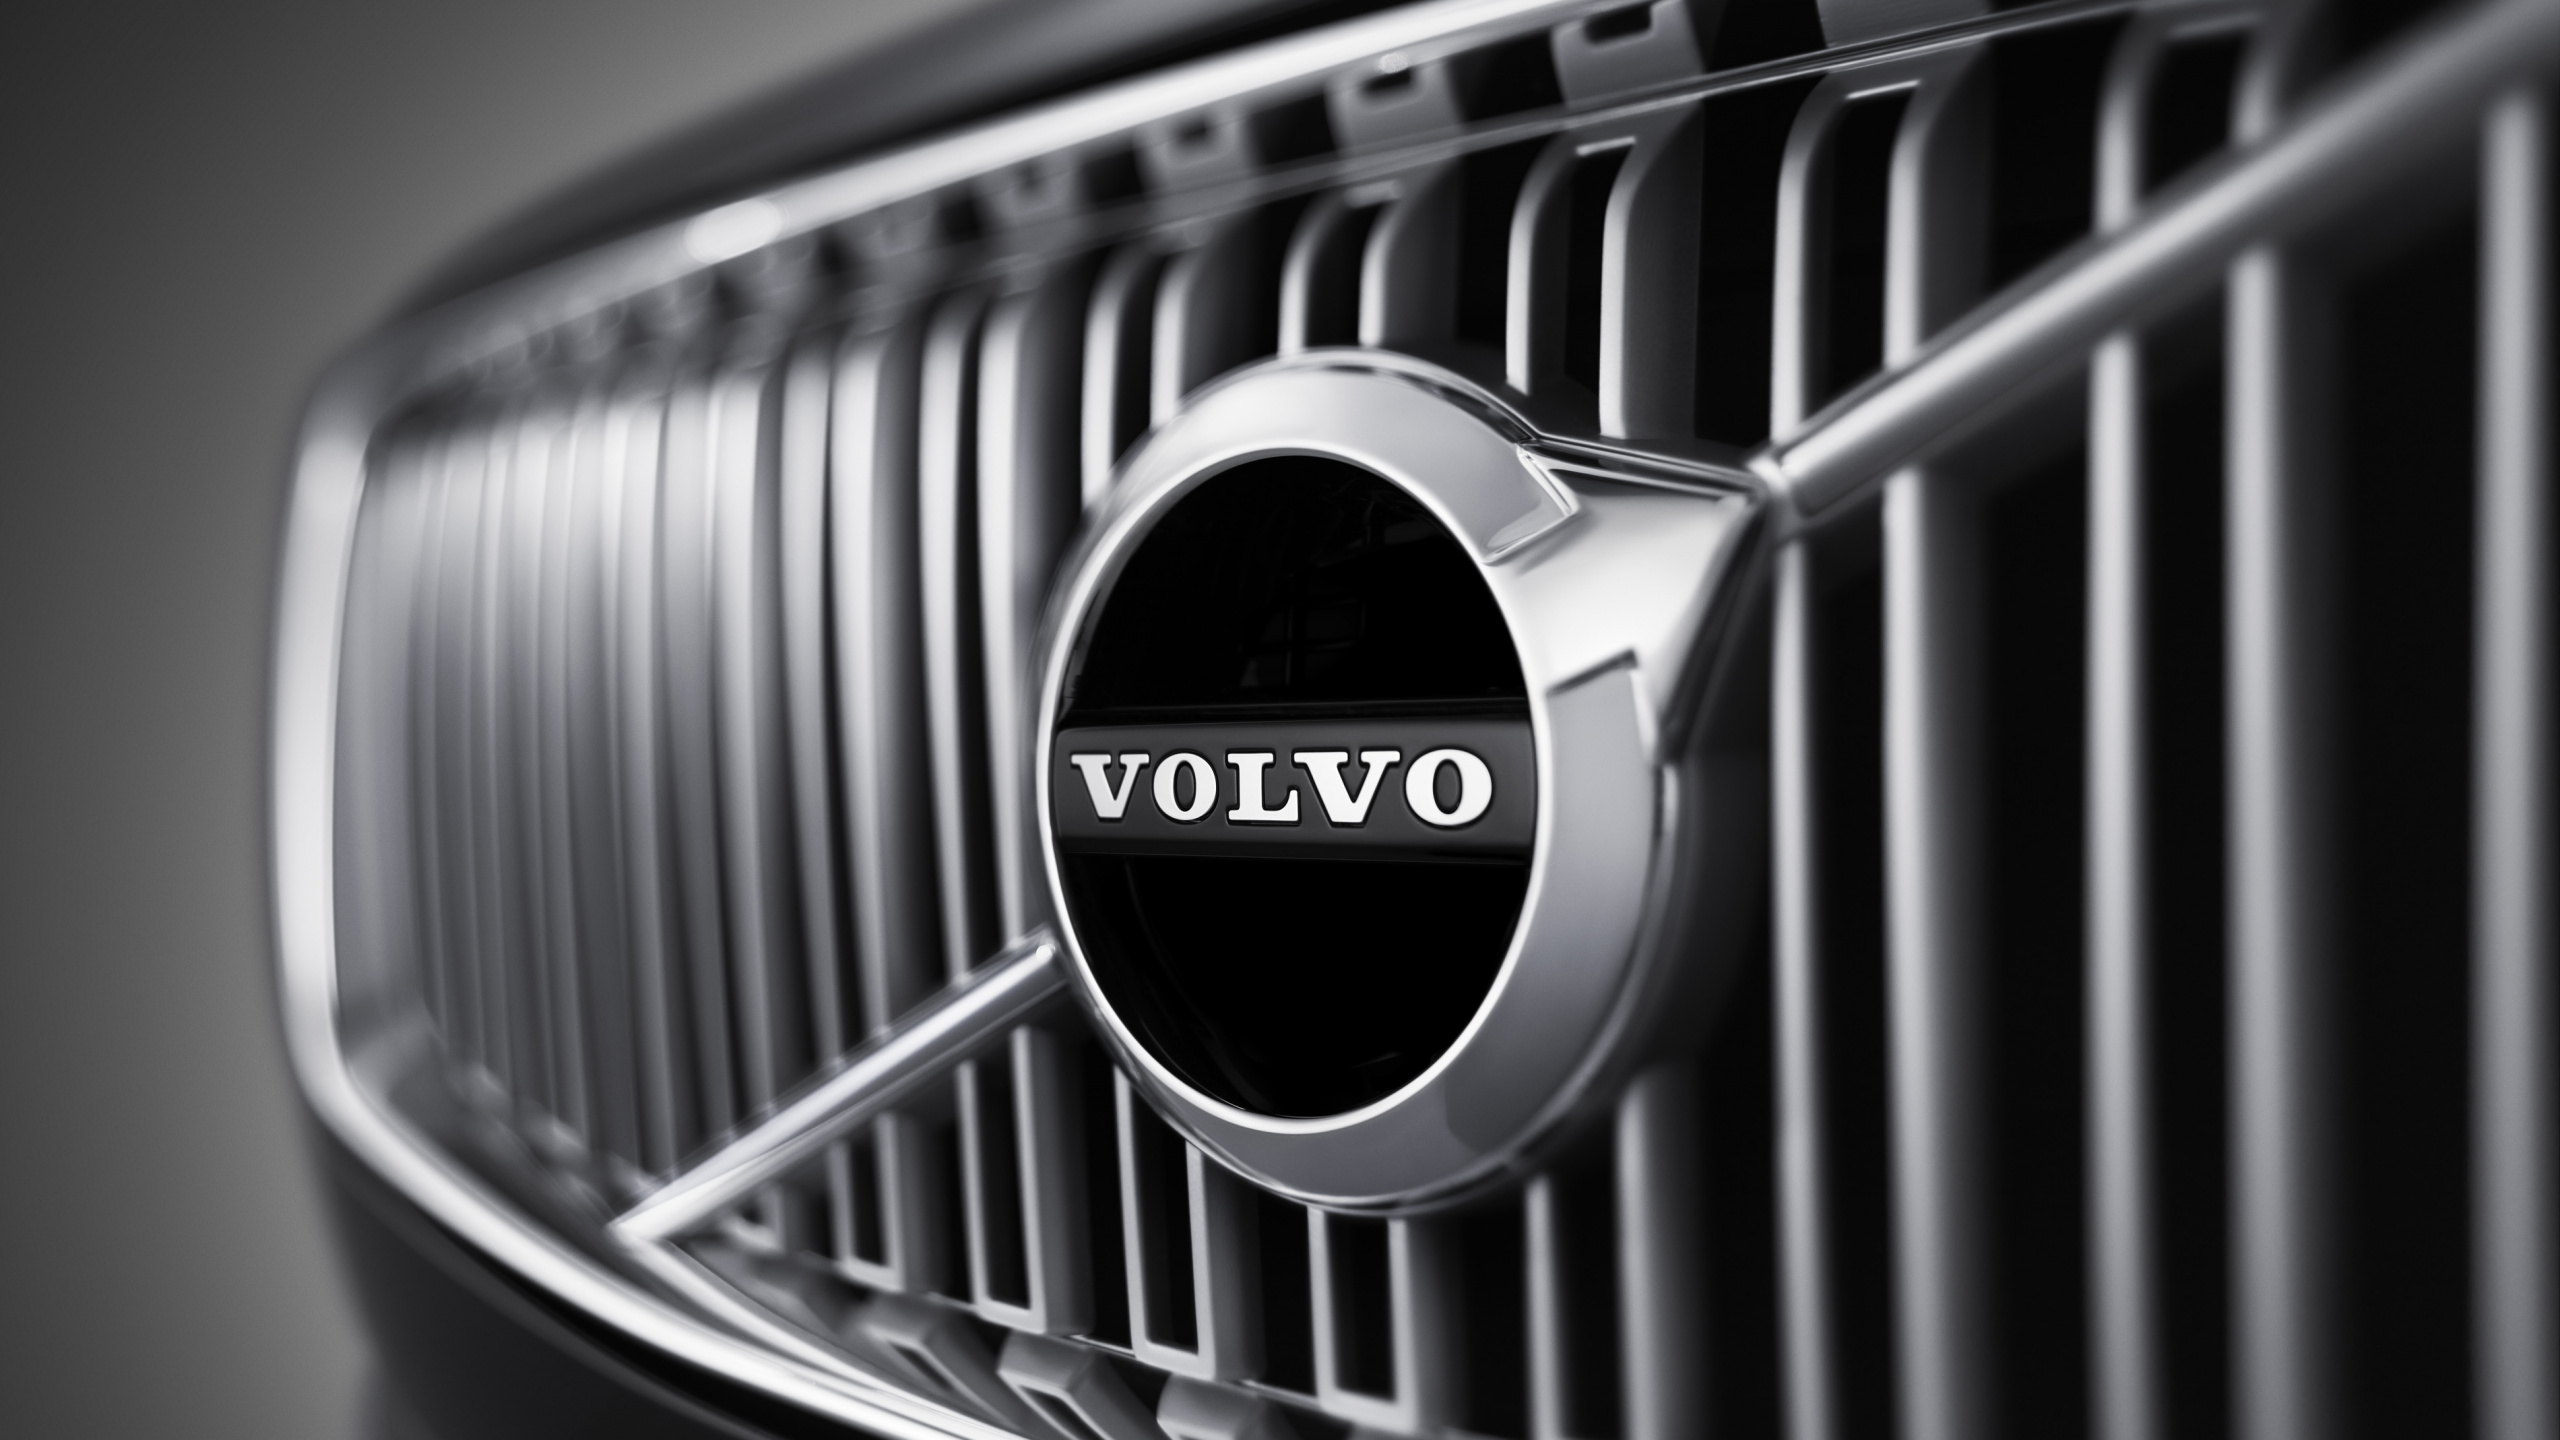 ab Volvo, Coches Volvo, Parrilla, en Blanco y Negro, Volvo. Wallpaper in 2560x1440 Resolution